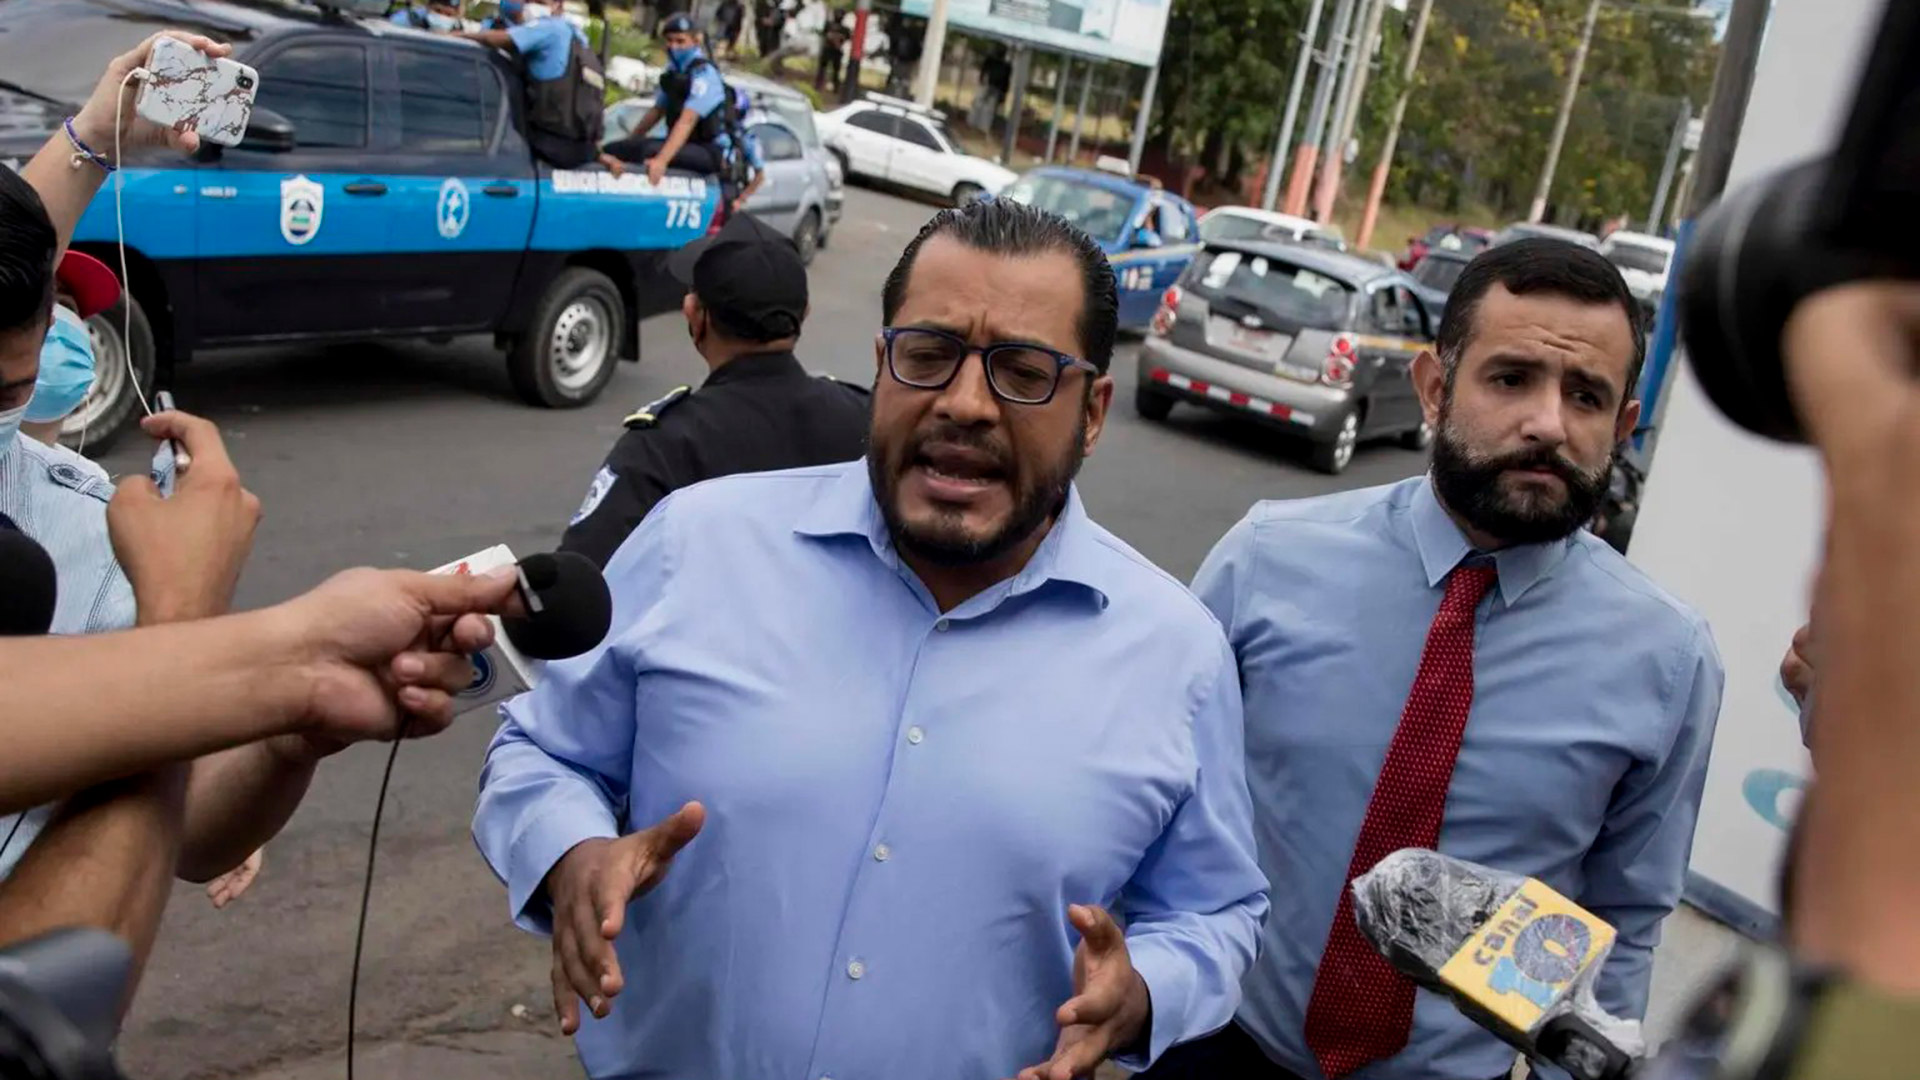 El opositor Félix Maradiaga junto a su abogado, Roger Reyes, dan declaraciones a los periodistas el pasado 8 de junio a su salida del Ministerio Público. Ambos fueron detenidos en diferentes momentos. (Foto EFE)